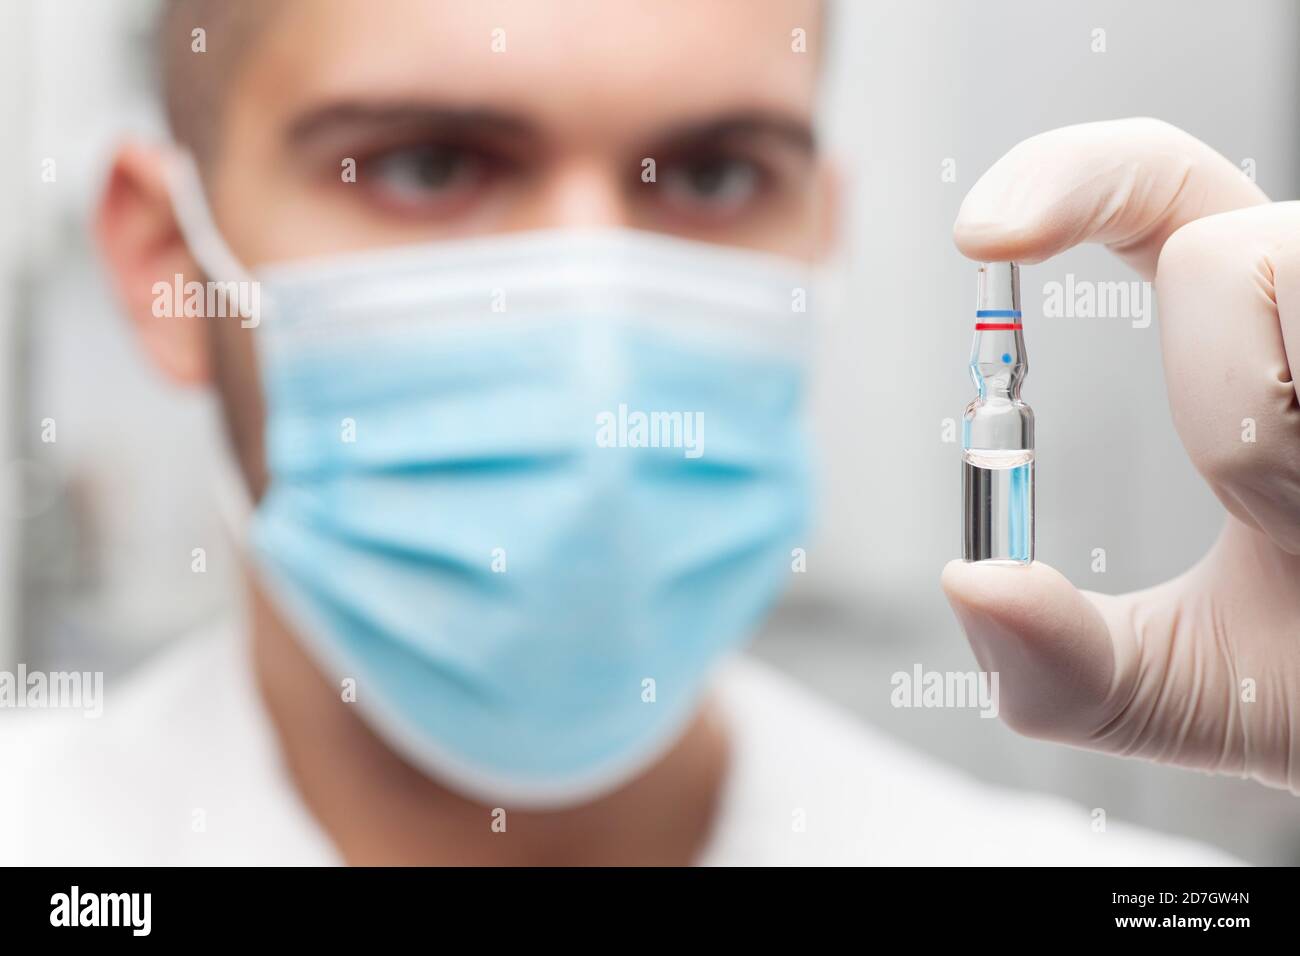 Arzt hält eine Ampulle für die Impfung oder Schönheitsbehandlung in Seine Hand - konzentrieren Sie sich auf die Ampulle Stockfoto